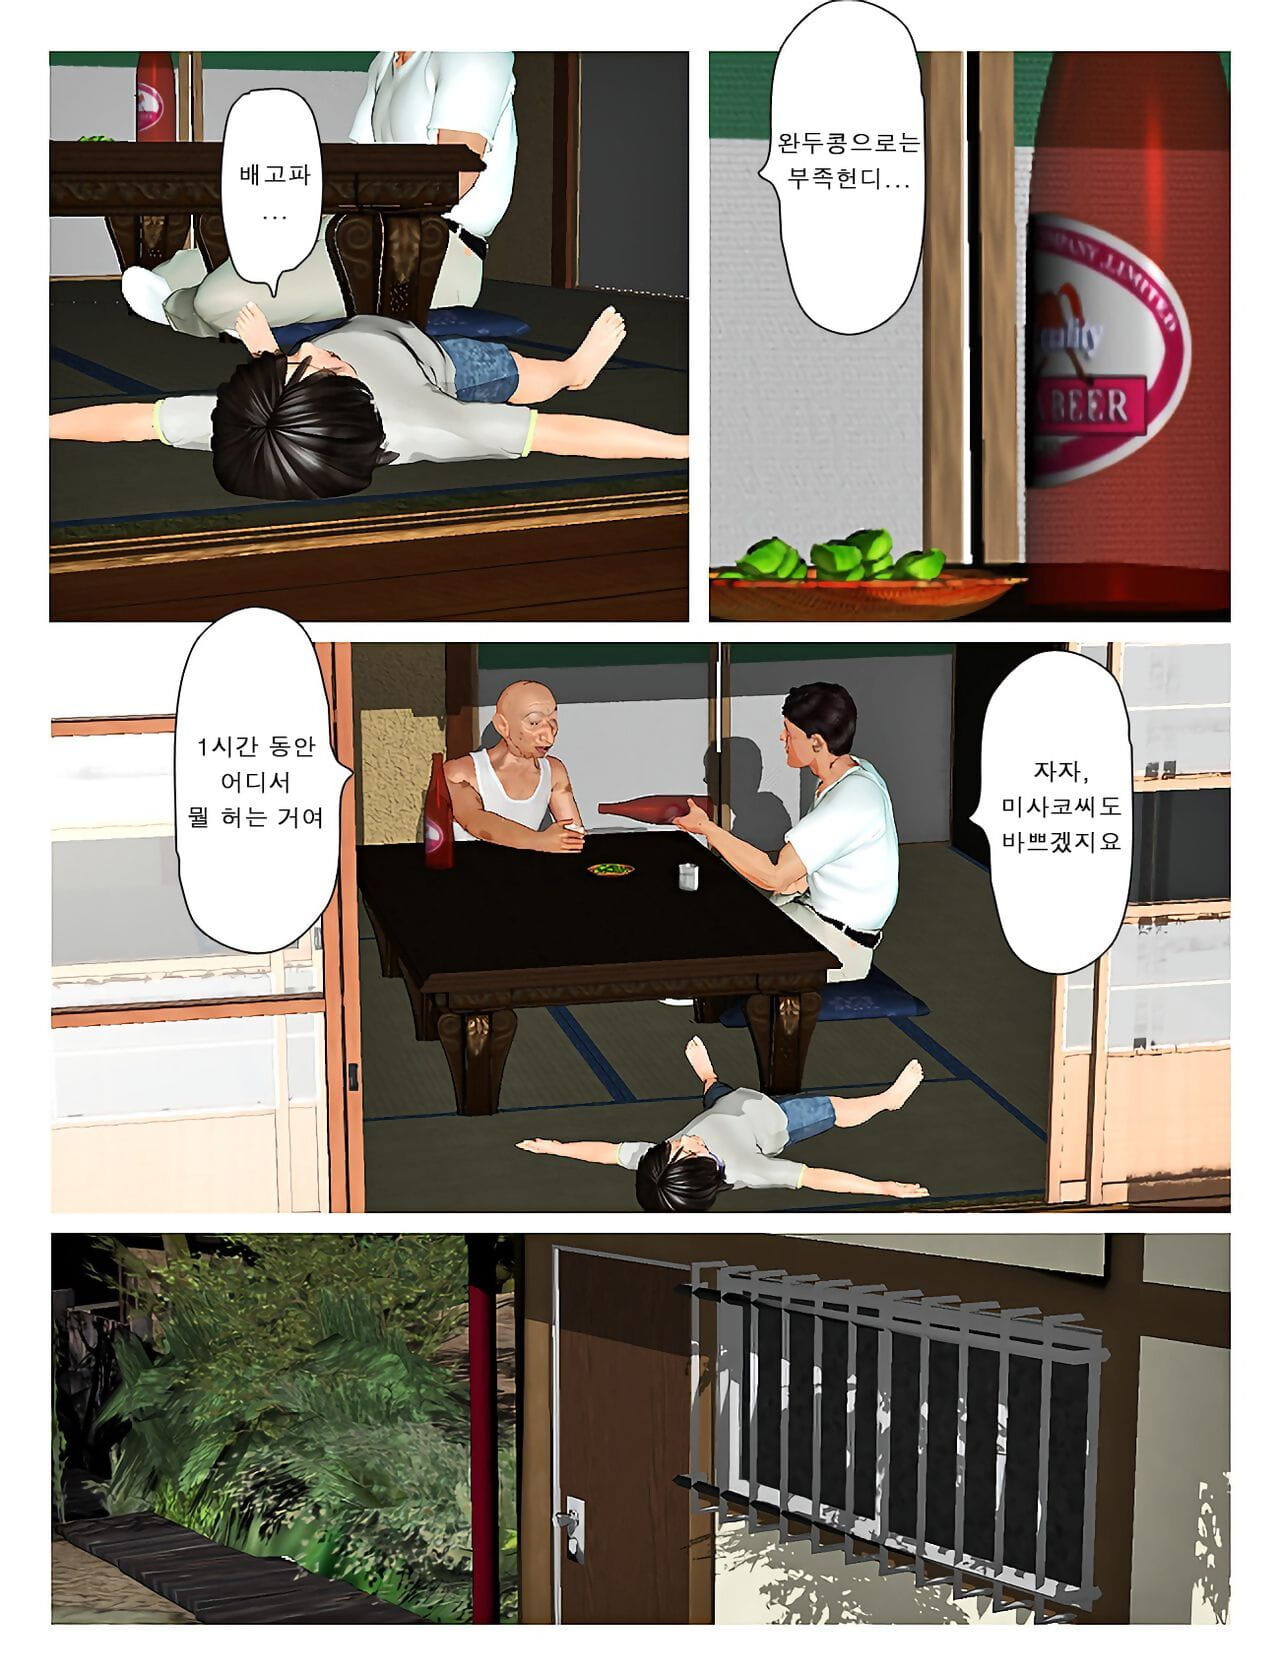 Kyou no Misako-san 2019:3 - 오늘의 미사코씨 2019:3 page 1